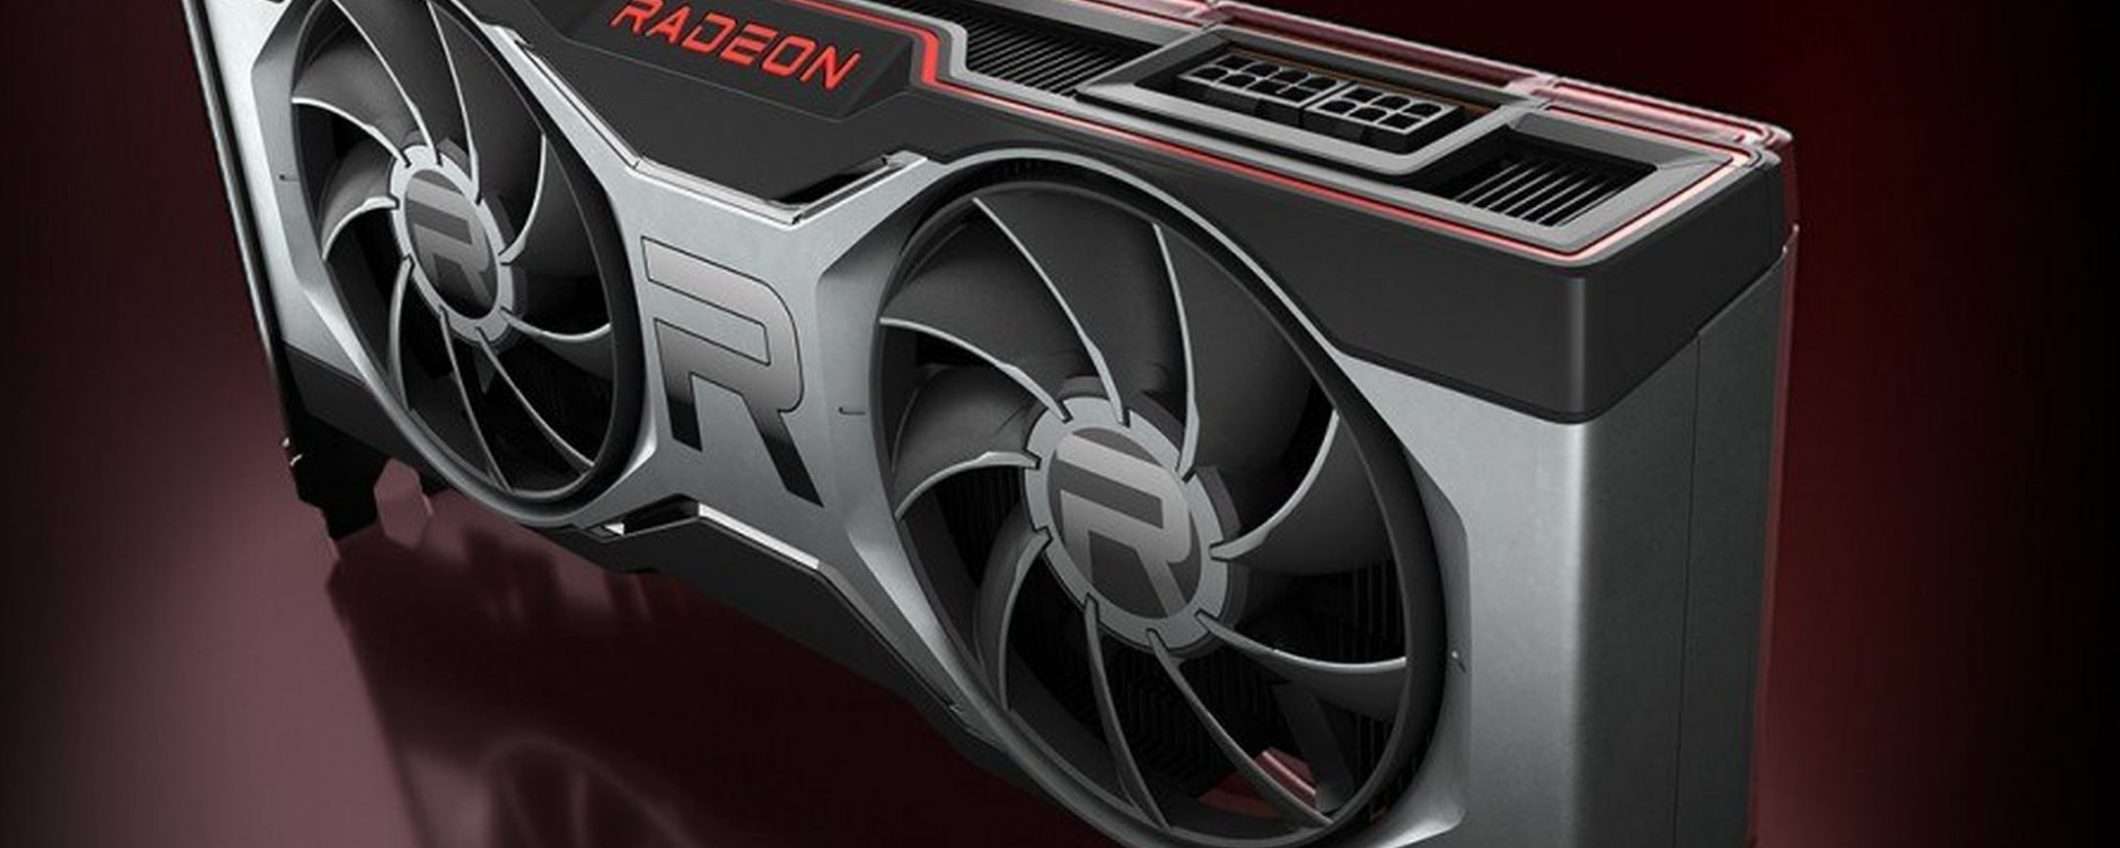 AMD Radeon RX 6700 XT: GPU per giocare a 1440p